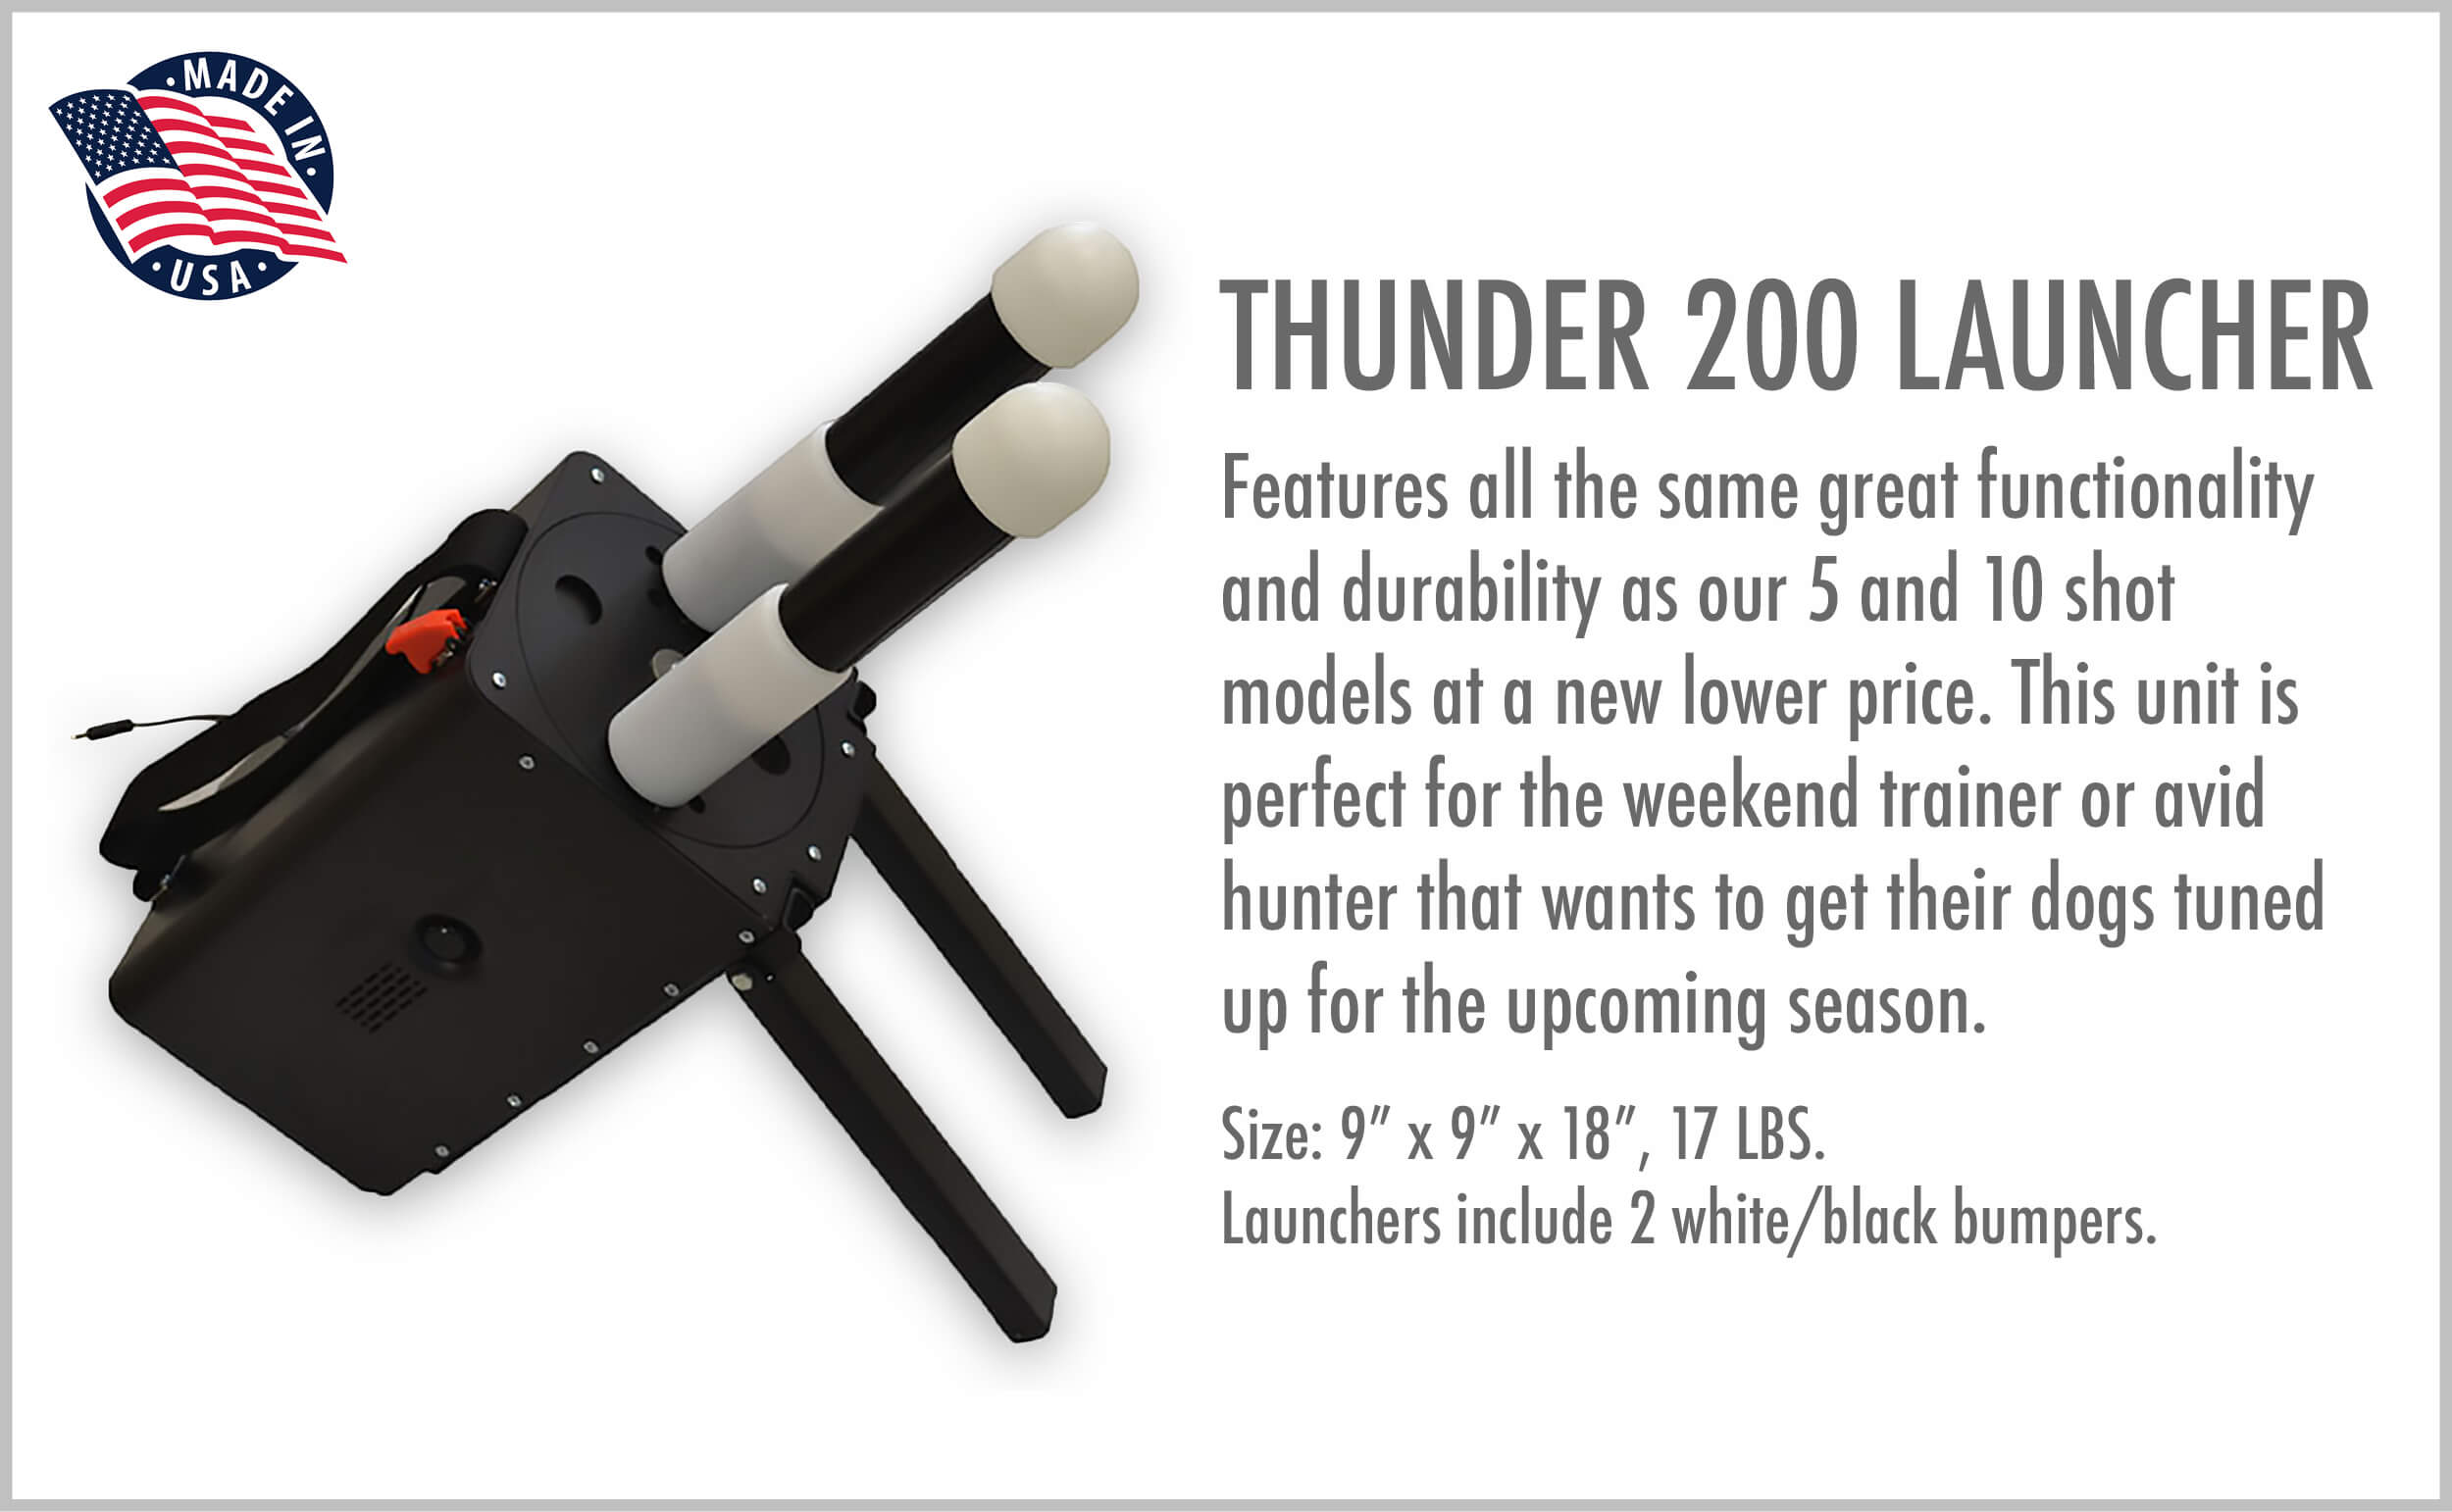 Thunder 200 Launcher